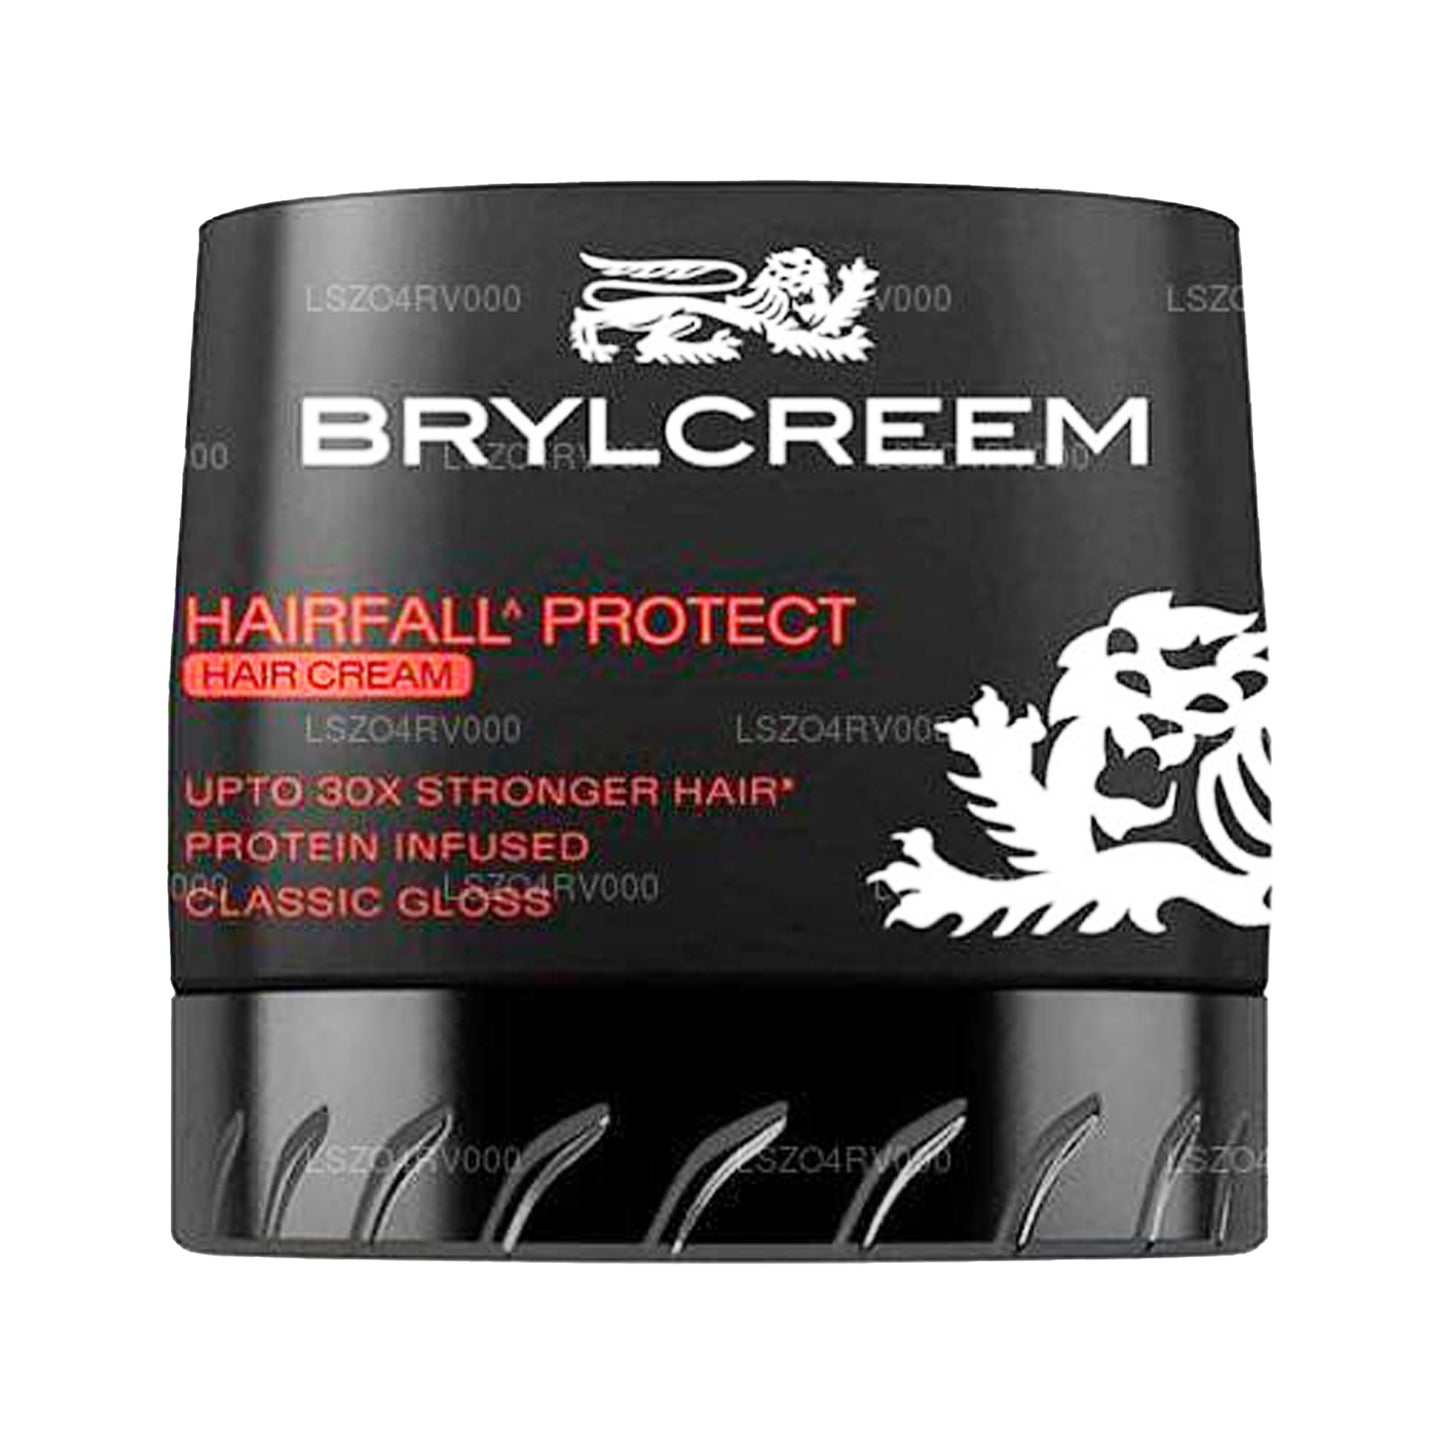 Brylcreem Hairfall Protect krém (75g)